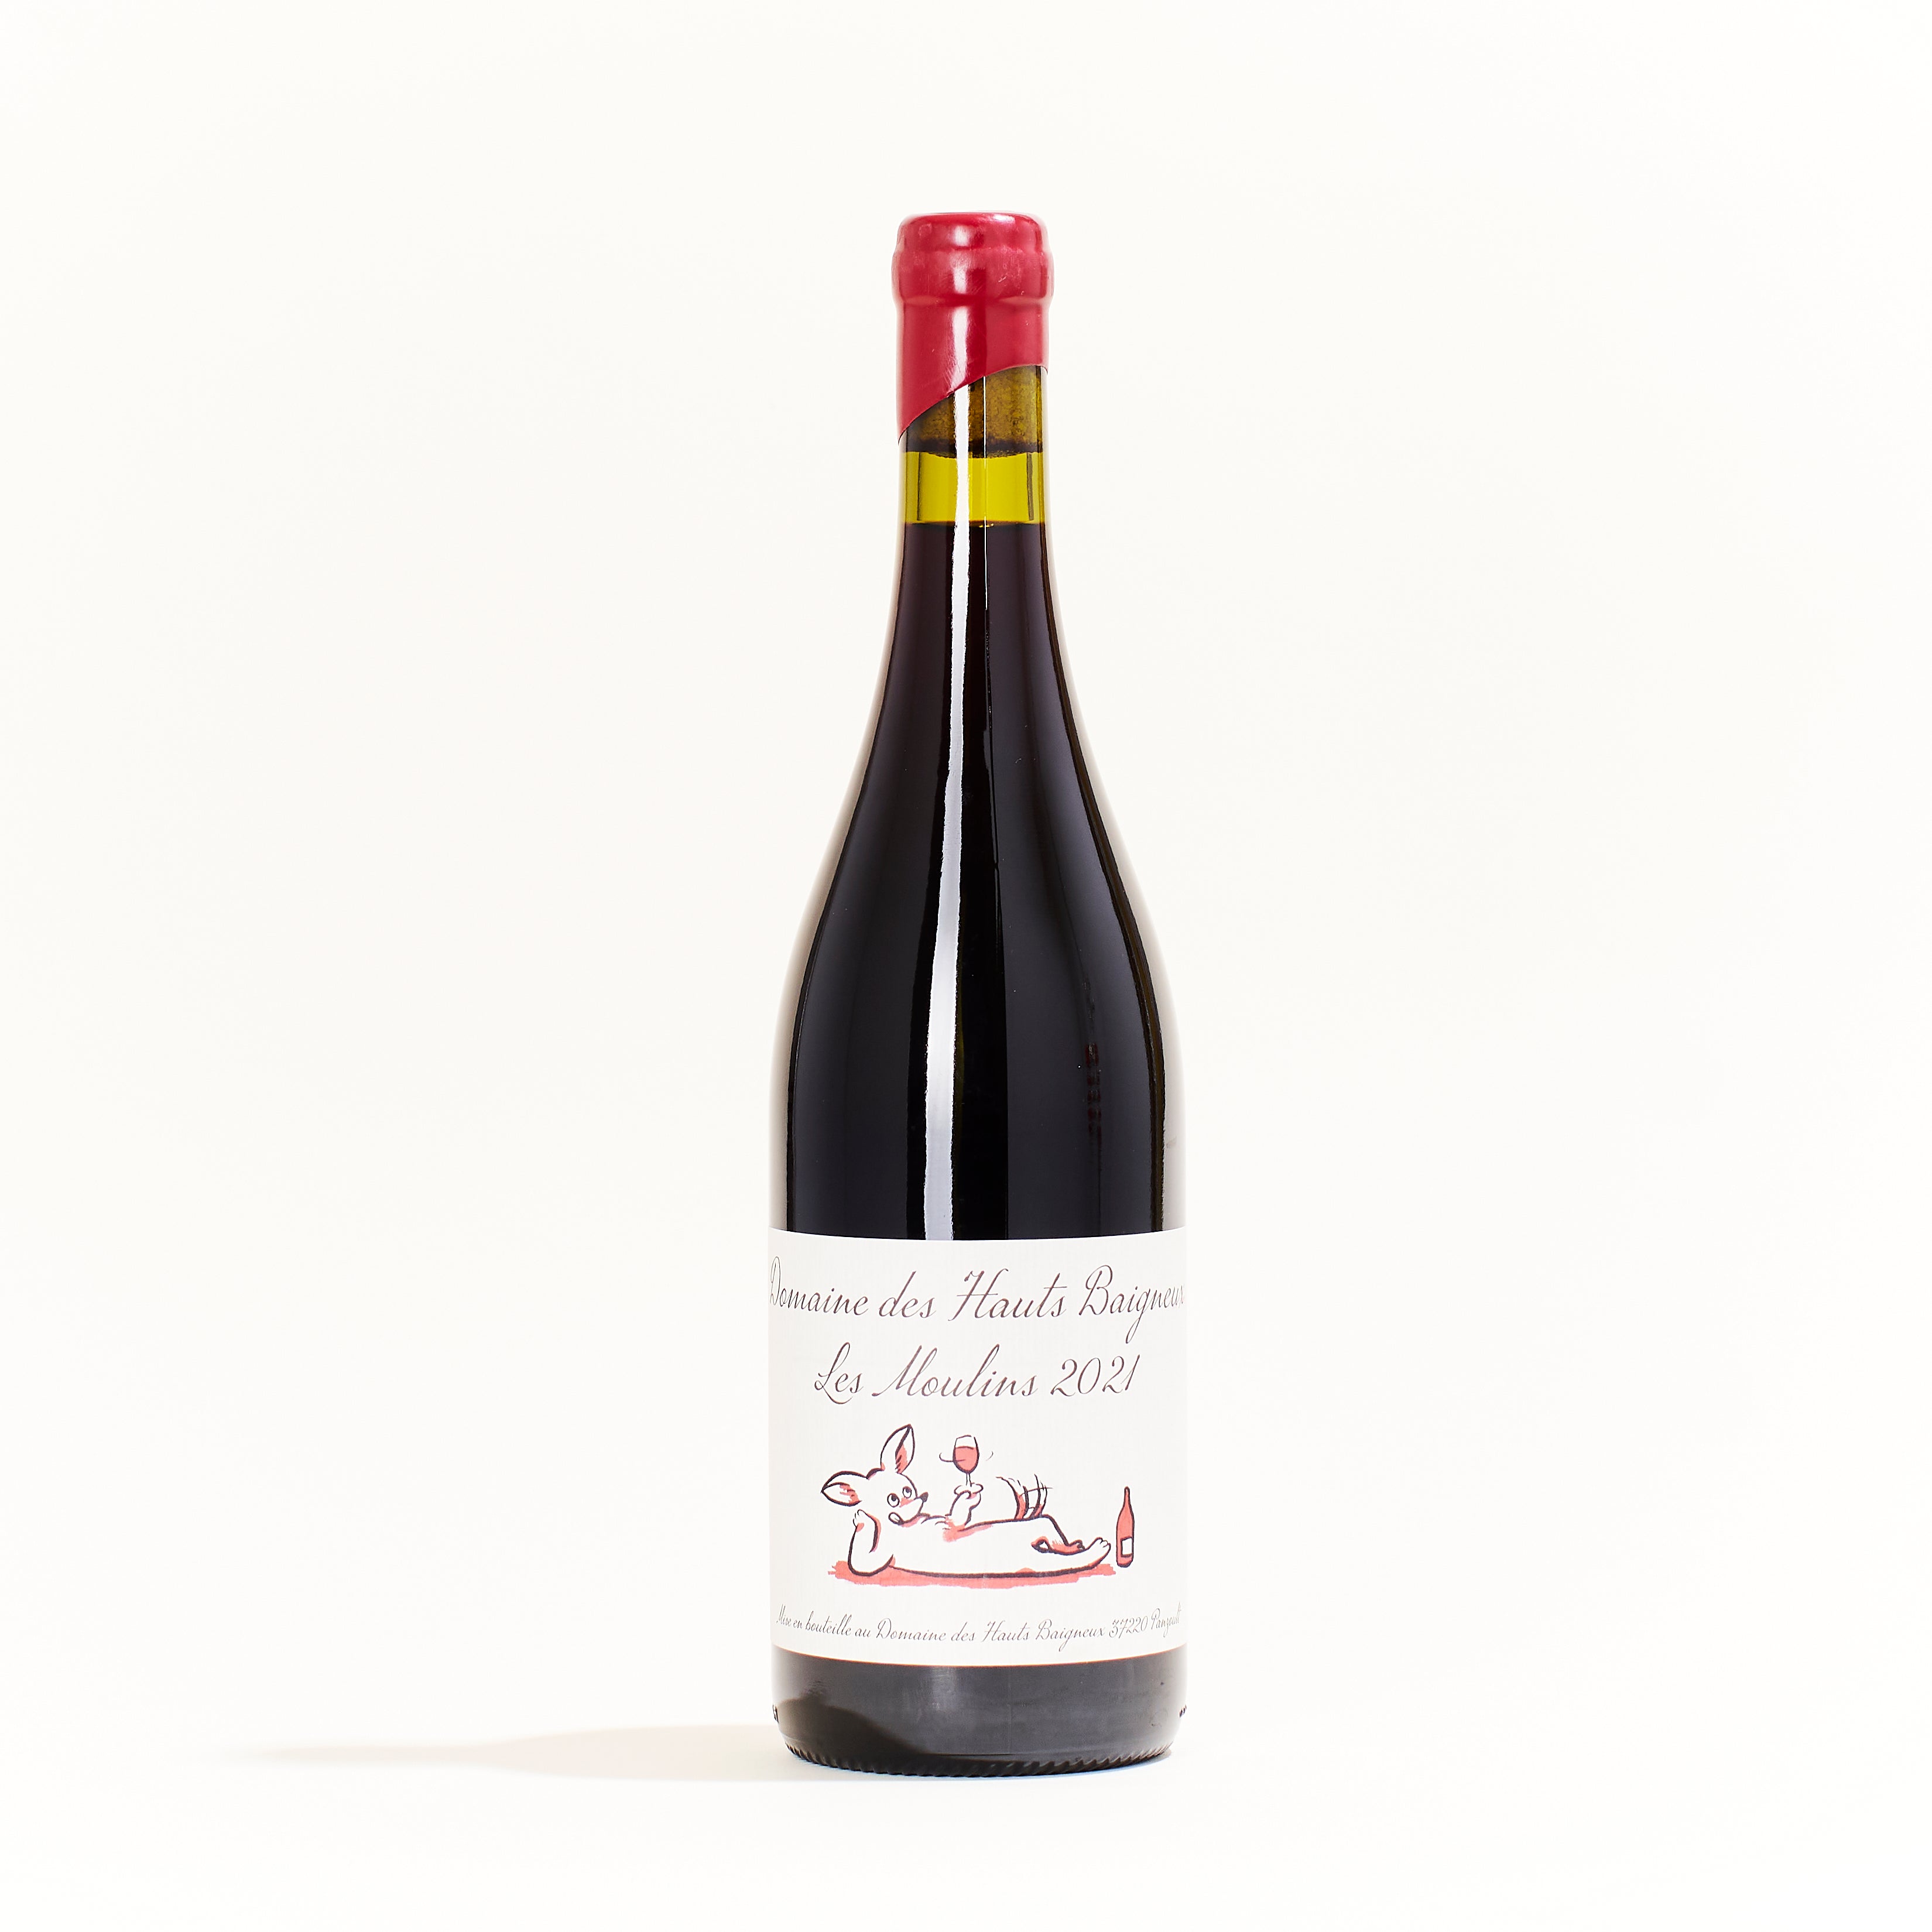 Les Moulins VDF Red natural wine bottle. Cabernet Franc grapes, minimal SO2, Domaine Haut-Baigneux, Panzoult, France.